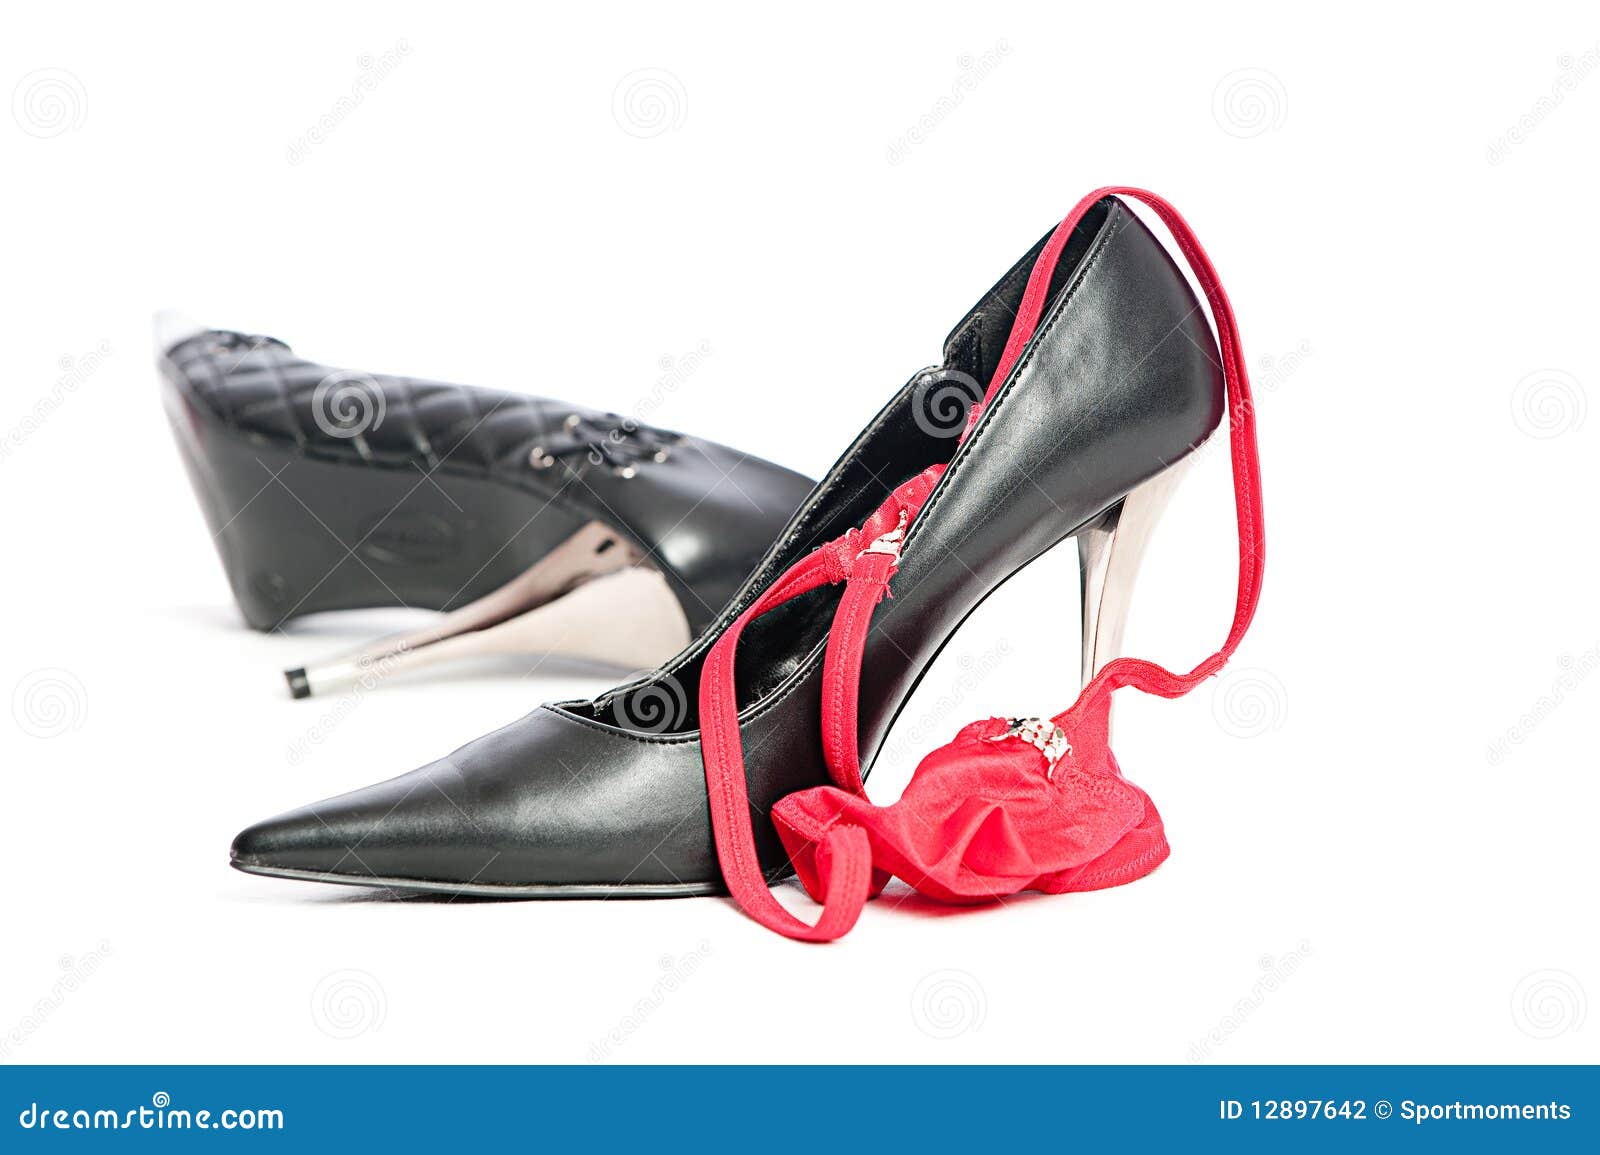 erotic hig heels in black